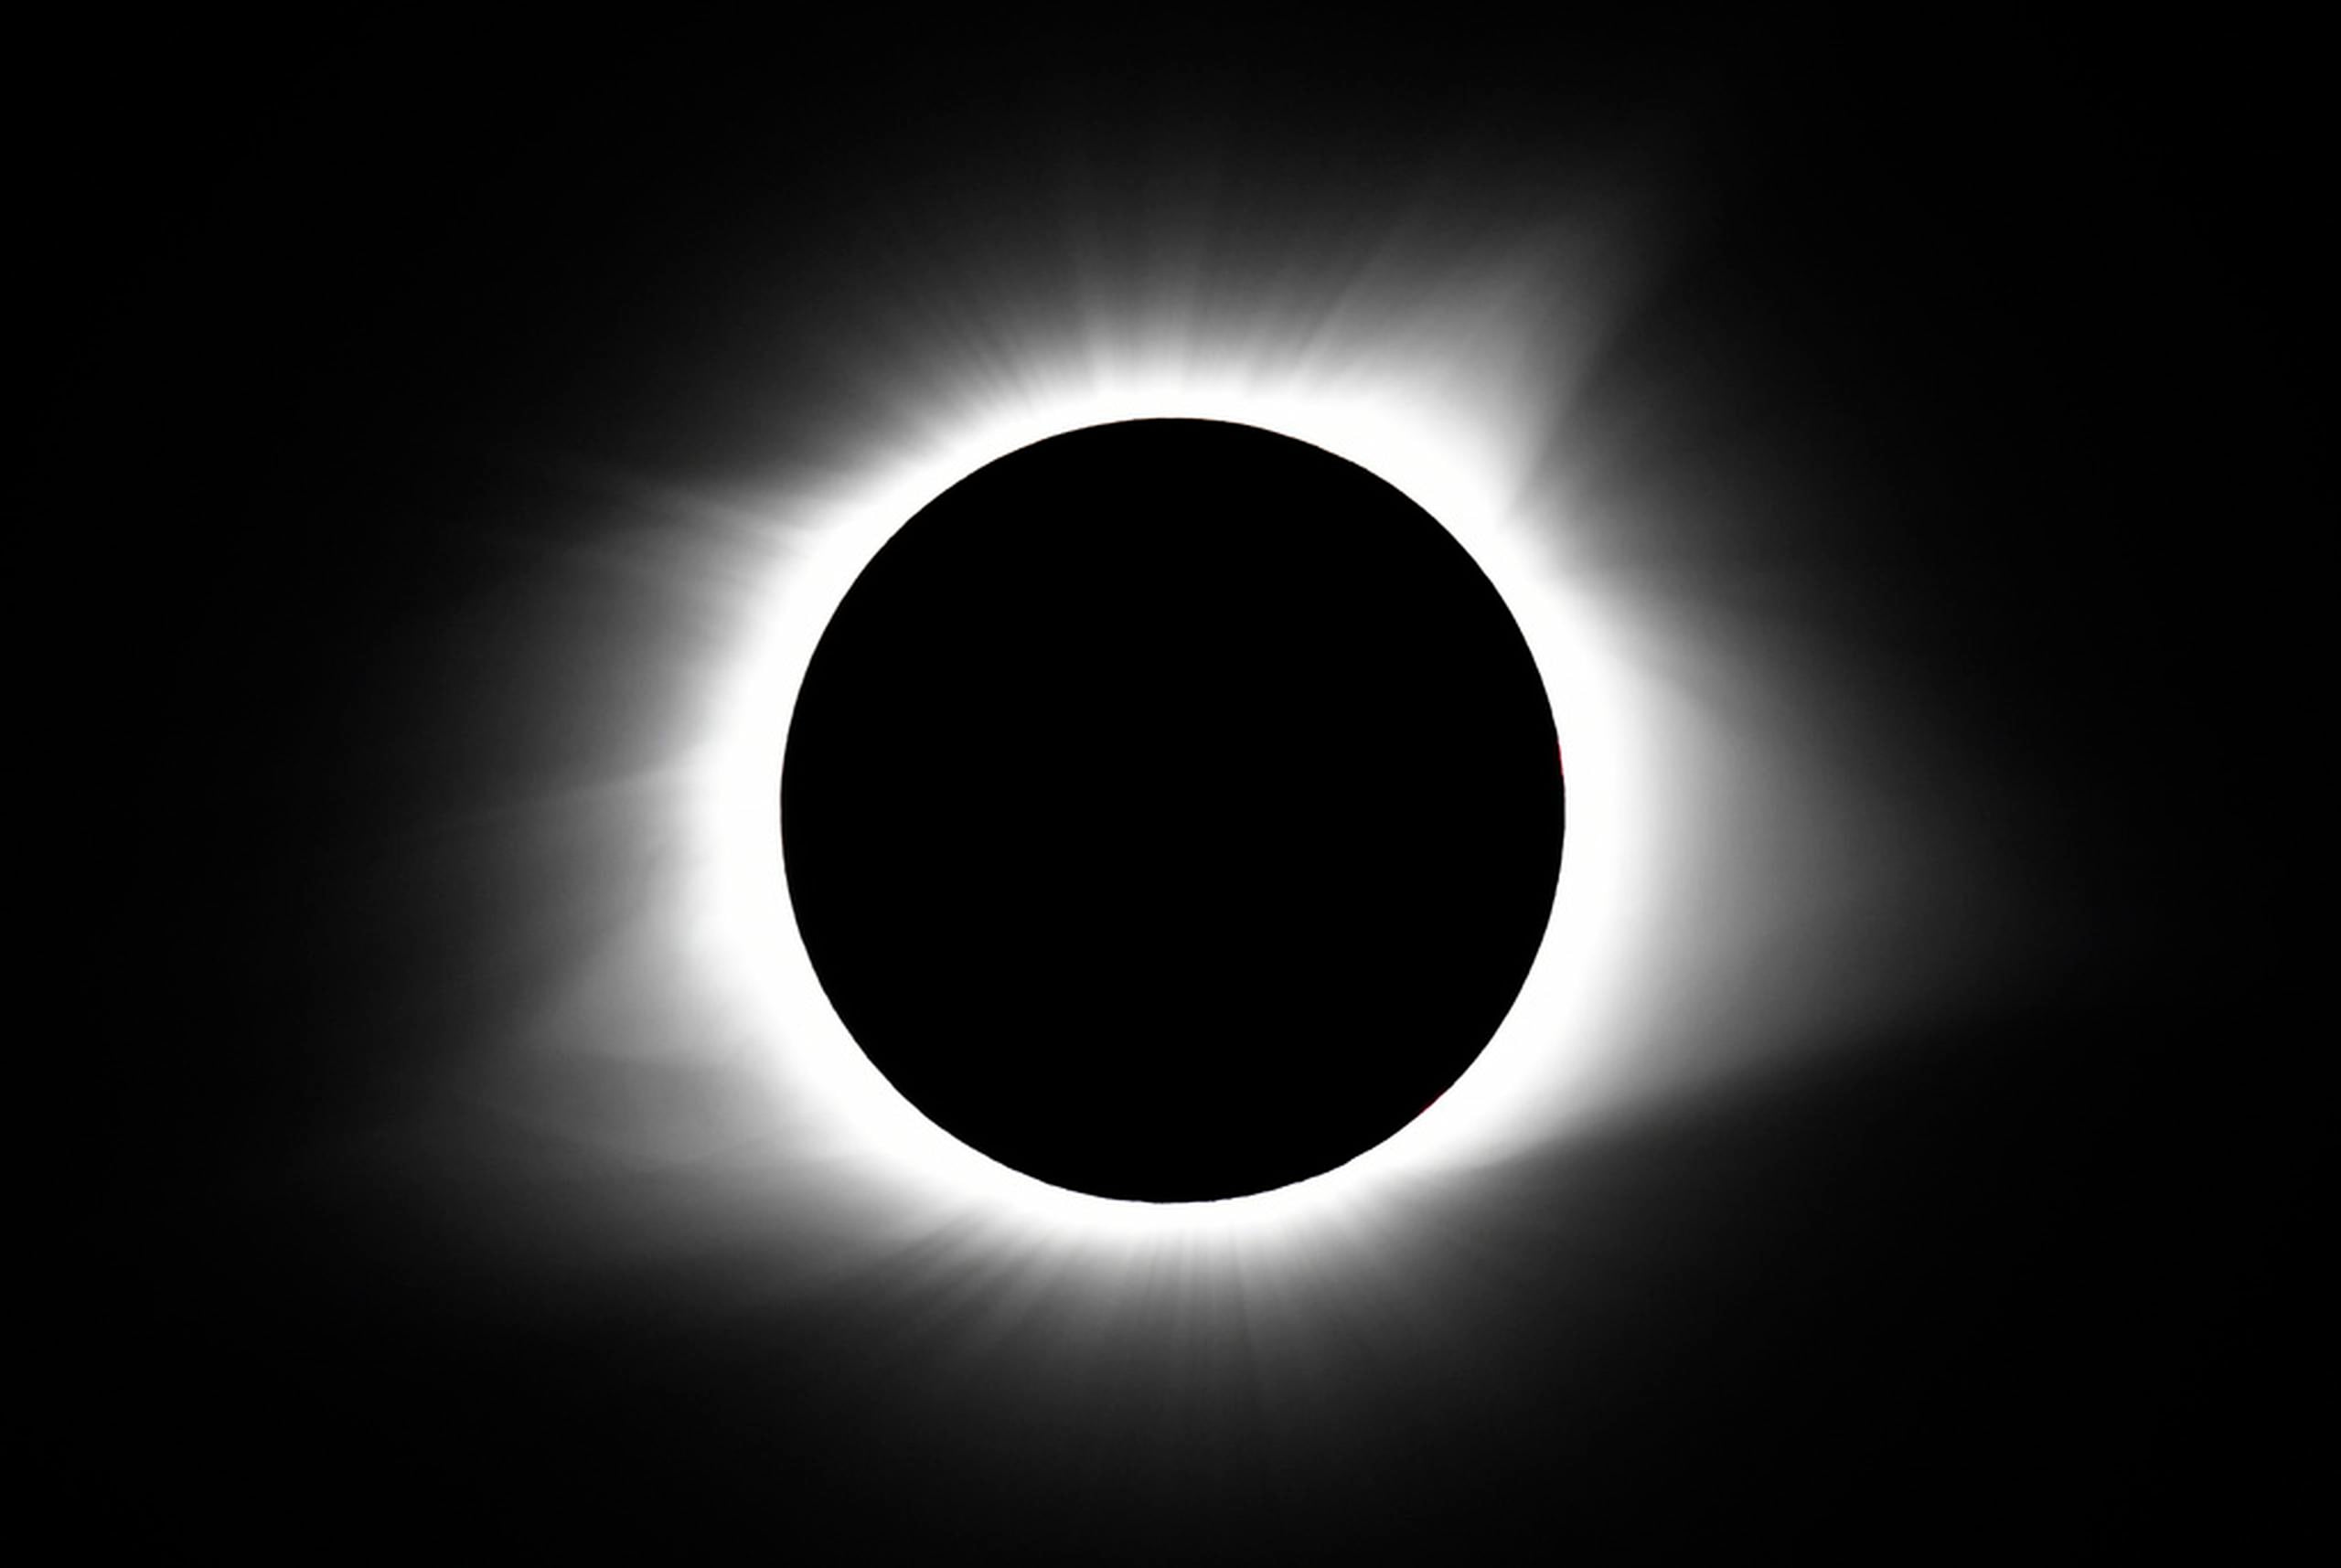 Para los que miren el eclipse con los pies en la tierra, la totalidad durará 4 minutos y 28 segundos como máximo, durando más en Torreón, México, y oscilando entre 3.5 y 4 minutos en otras ubicaciones.